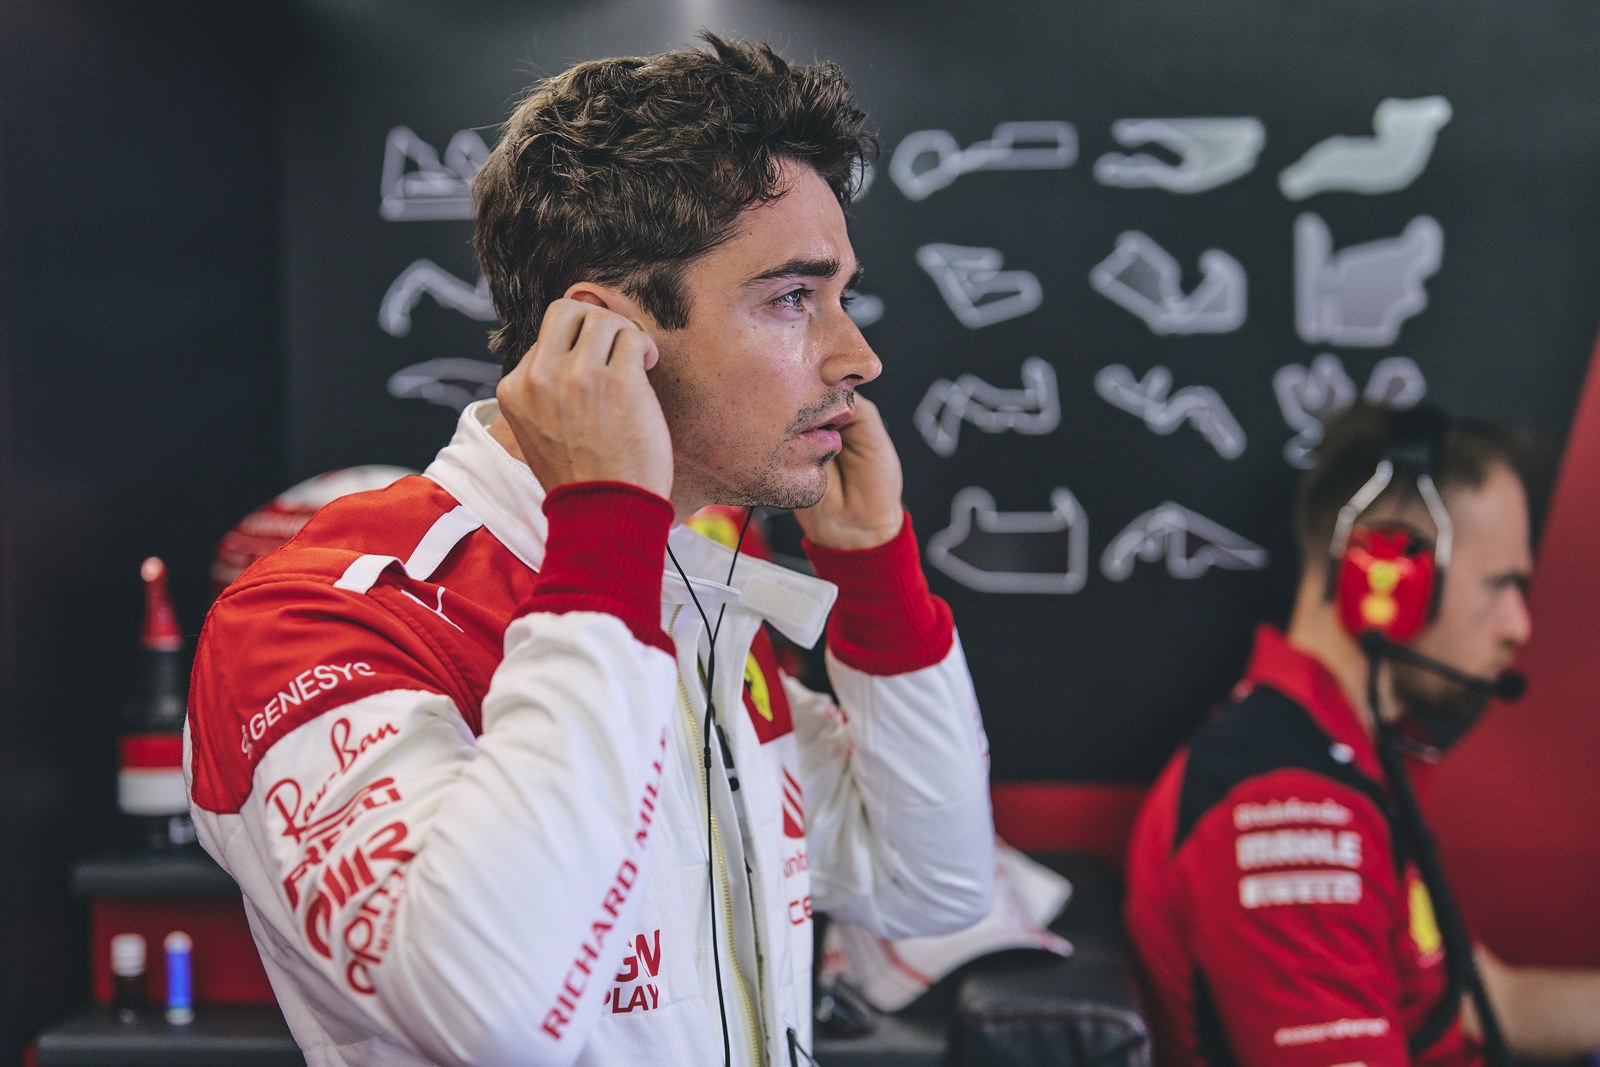 P**** de sa race : Charles Leclerc (Ferrari) s'excuse après avoir